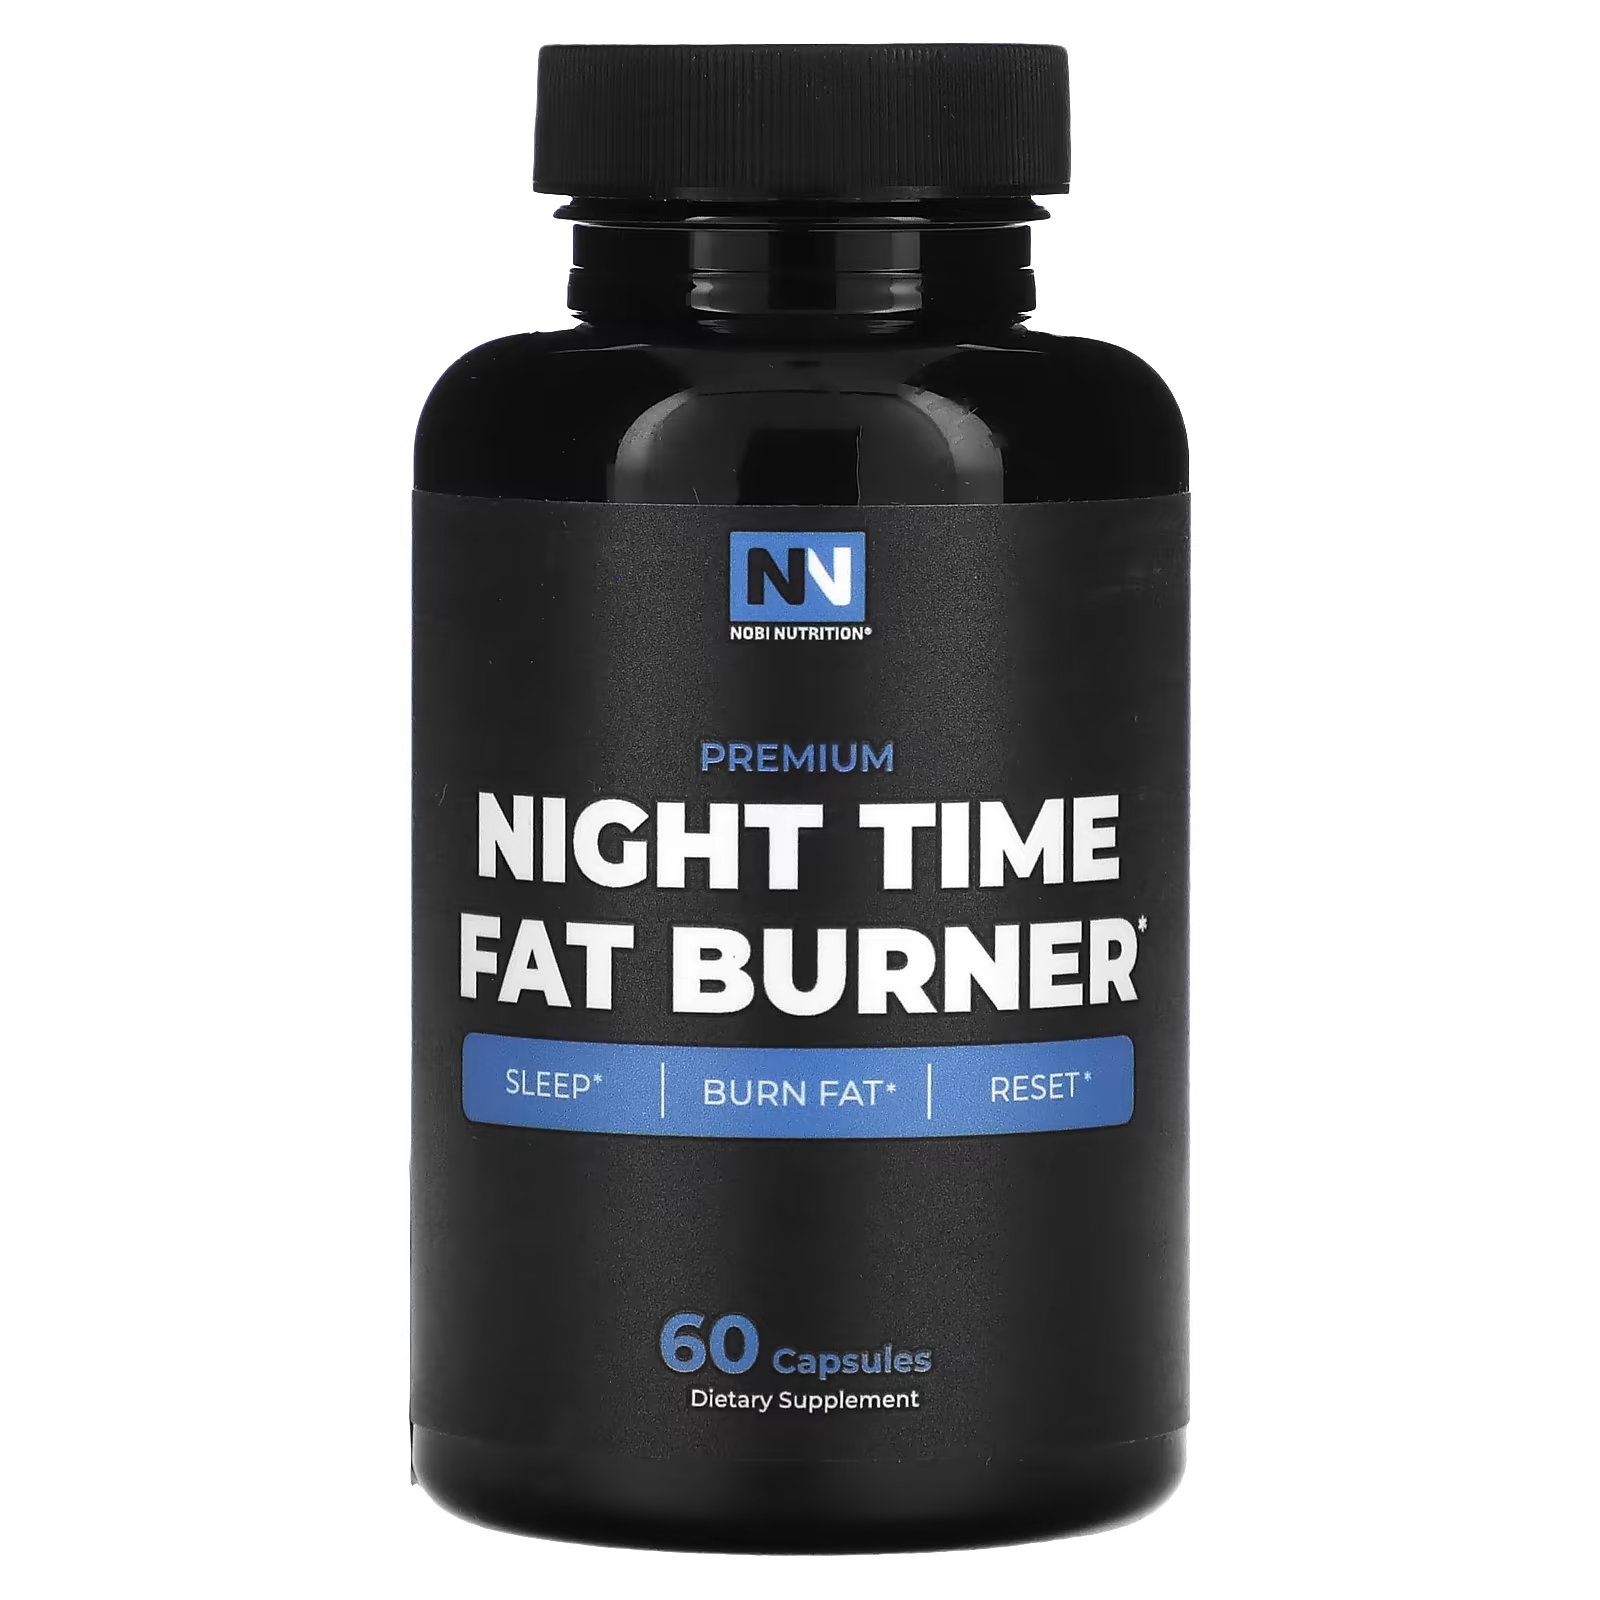 Nobi Nutrition Премиум средство для сжигания жира в ночное время, 60 капсул gaspari nutrition dtn8 взрывное средство для сжигания жира 60 капсул